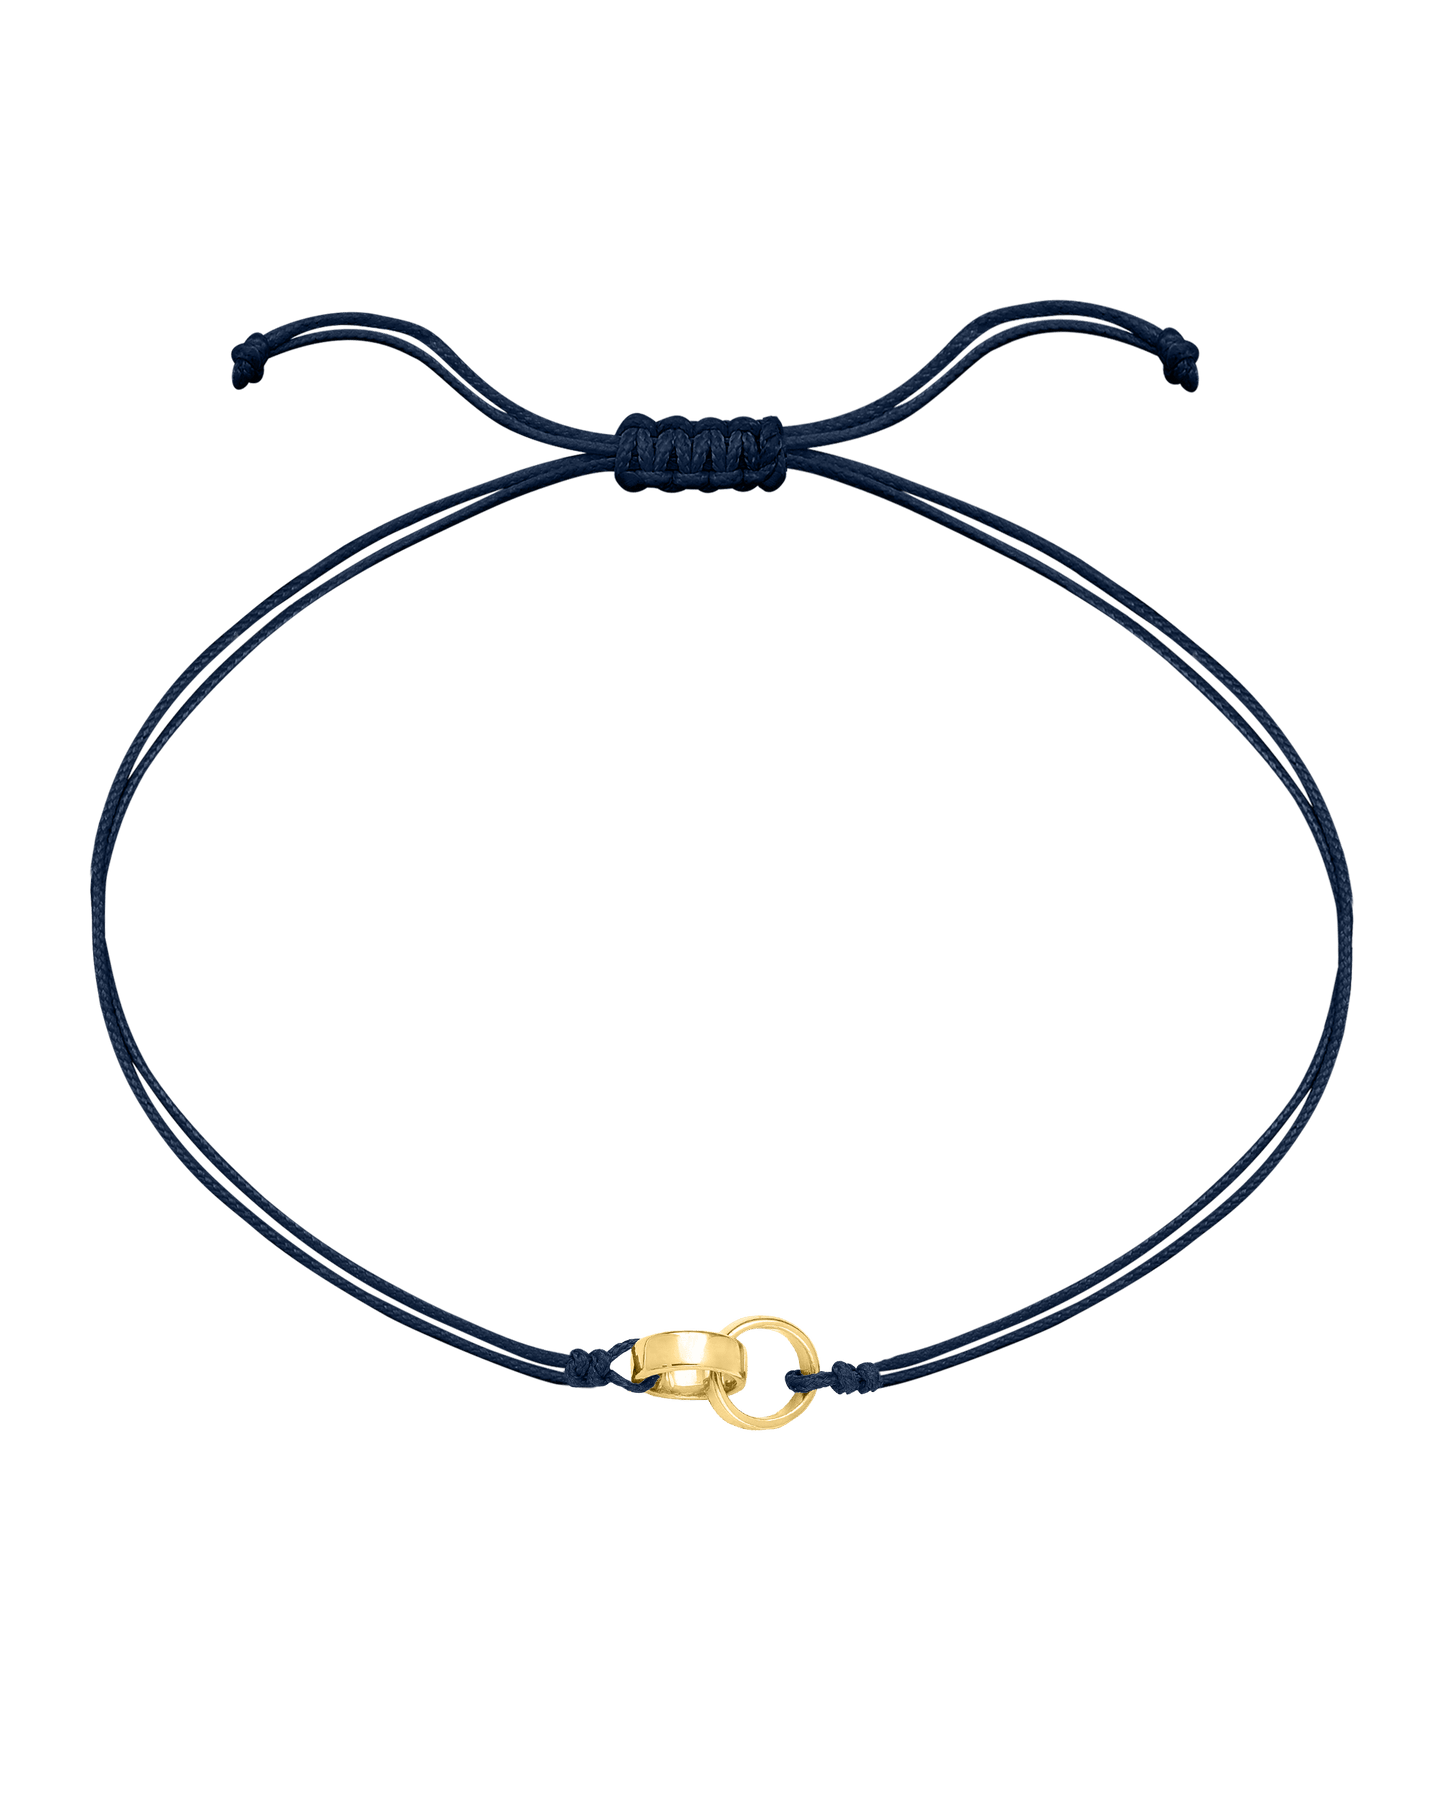 Engravable Links of Love - 18K Gold Vermeil Bracelets magal-dev 2 Navy Blue 